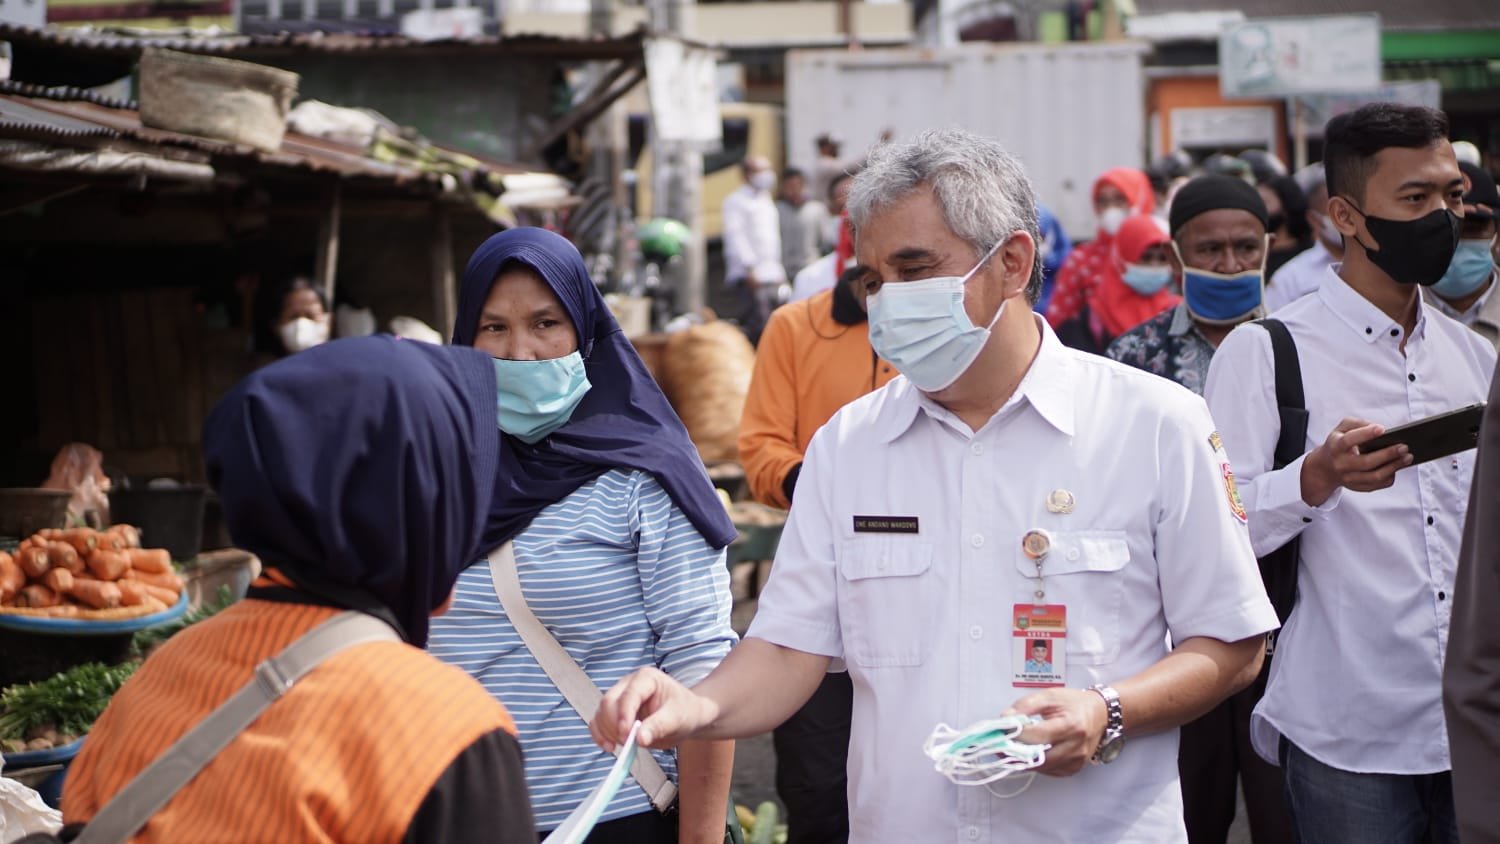 MASKER. Bupati Wonosobo, Afif Nurhidayat dan Jajaran Forum Komunikasi Pimpinan Daerah (Forkompinda) beserta istri, membagikan tak kurang dari 250.000 masker gratis